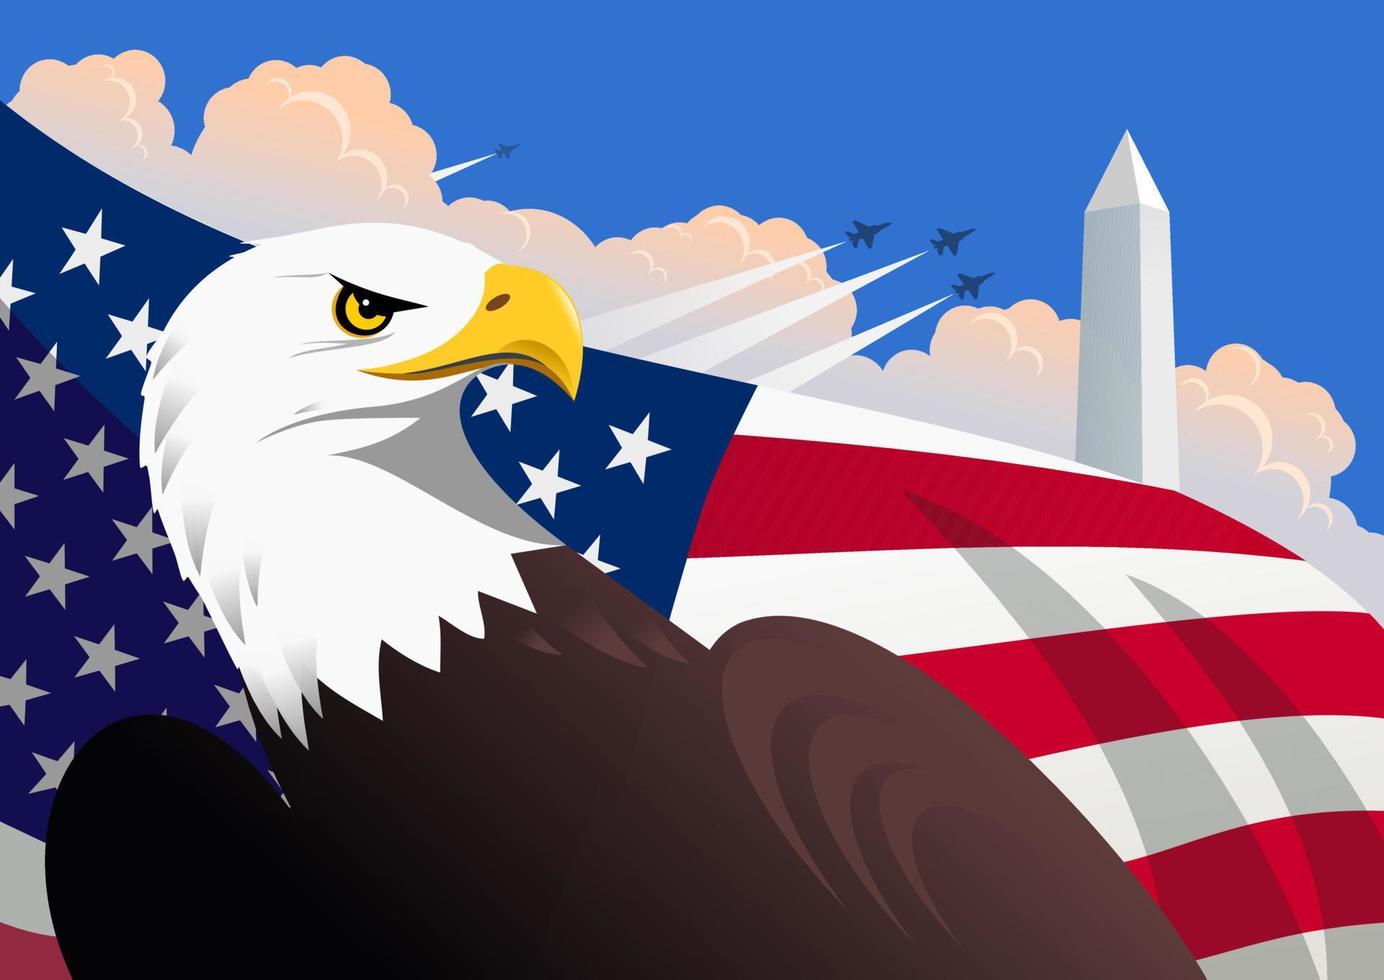 ilustração patriótica americana simbólica com a águia careca, a bandeira dos EUA, o monumento de Washington e aviões militares voando no céu com nuvens cumulus vetor